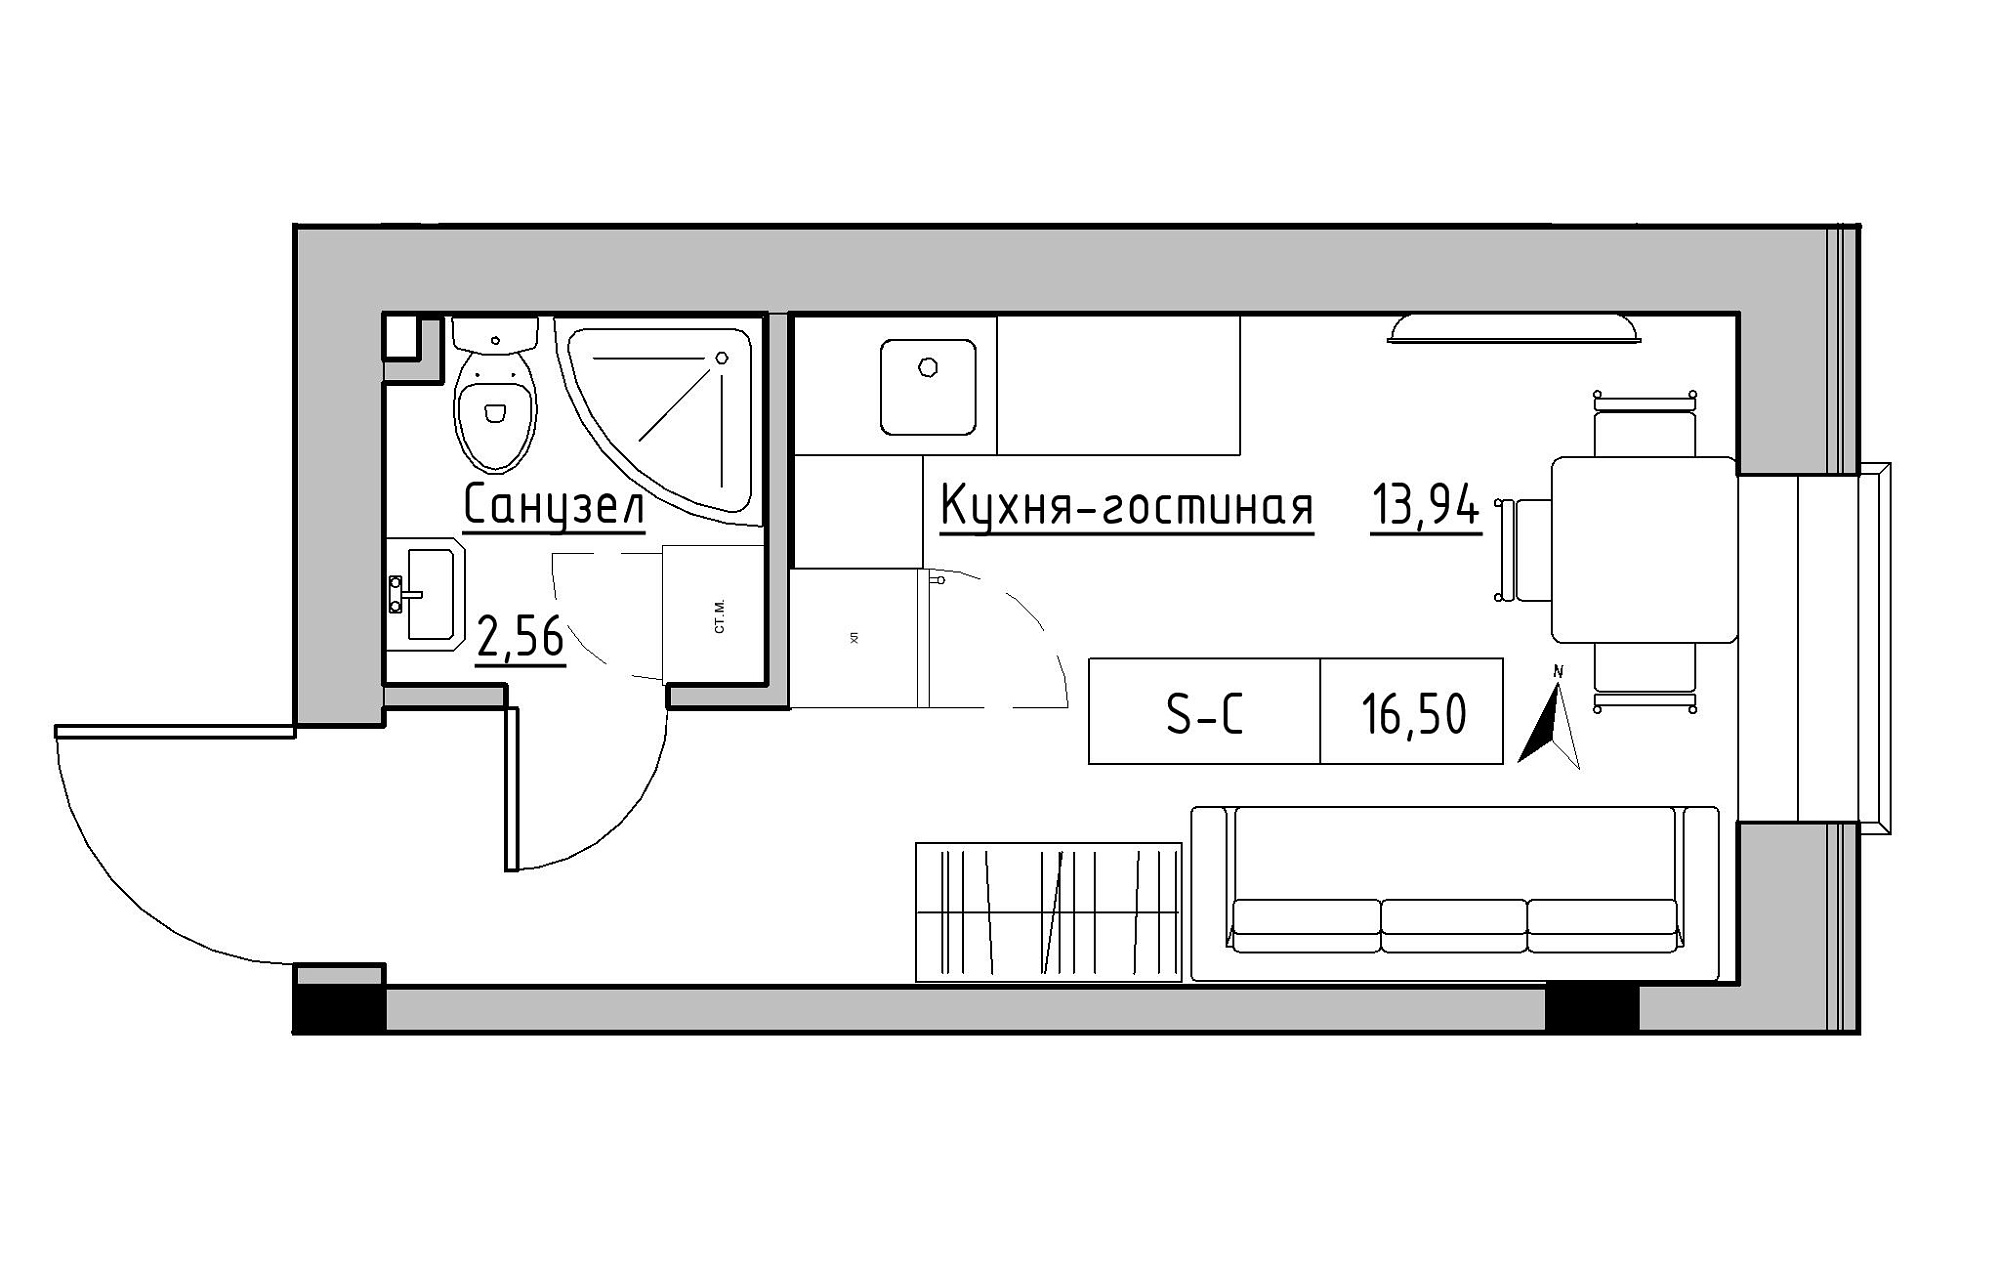 Планування Smart-квартира площею 16.5м2, KS-019-04/0005.